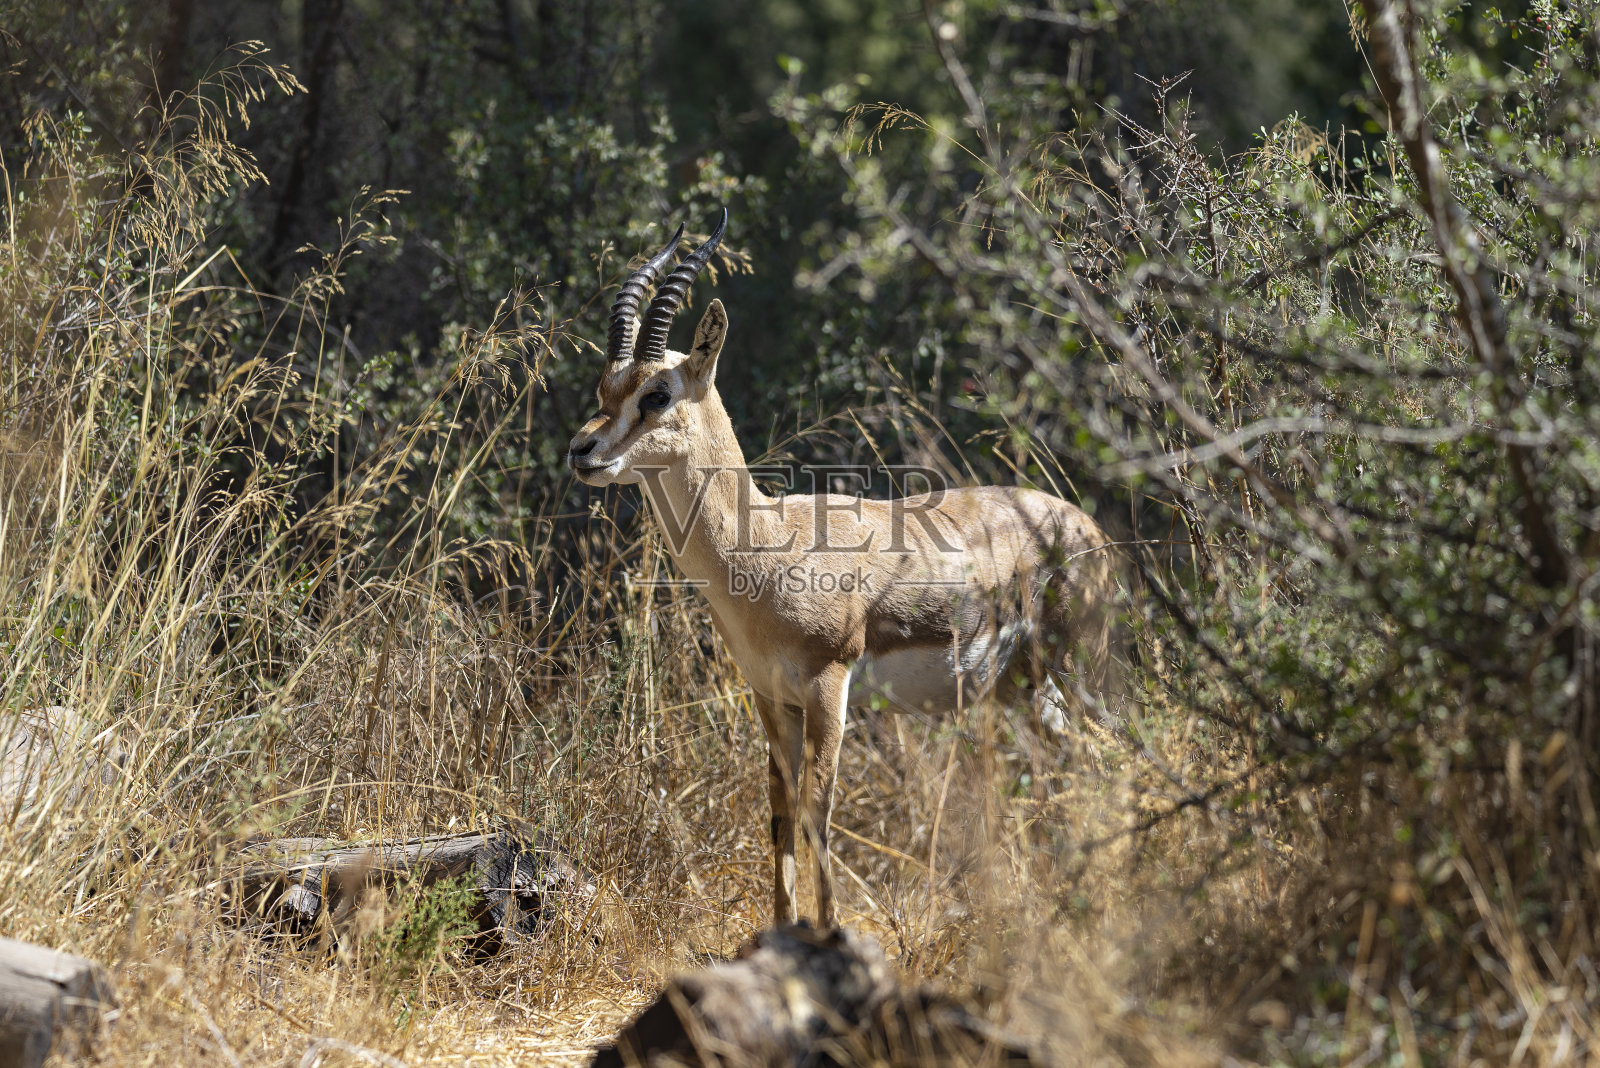 以色列耶路撒冷瞪羚谷国家公园里的一只雄性山瞪羚。拍摄日期11.09.2021照片摄影图片